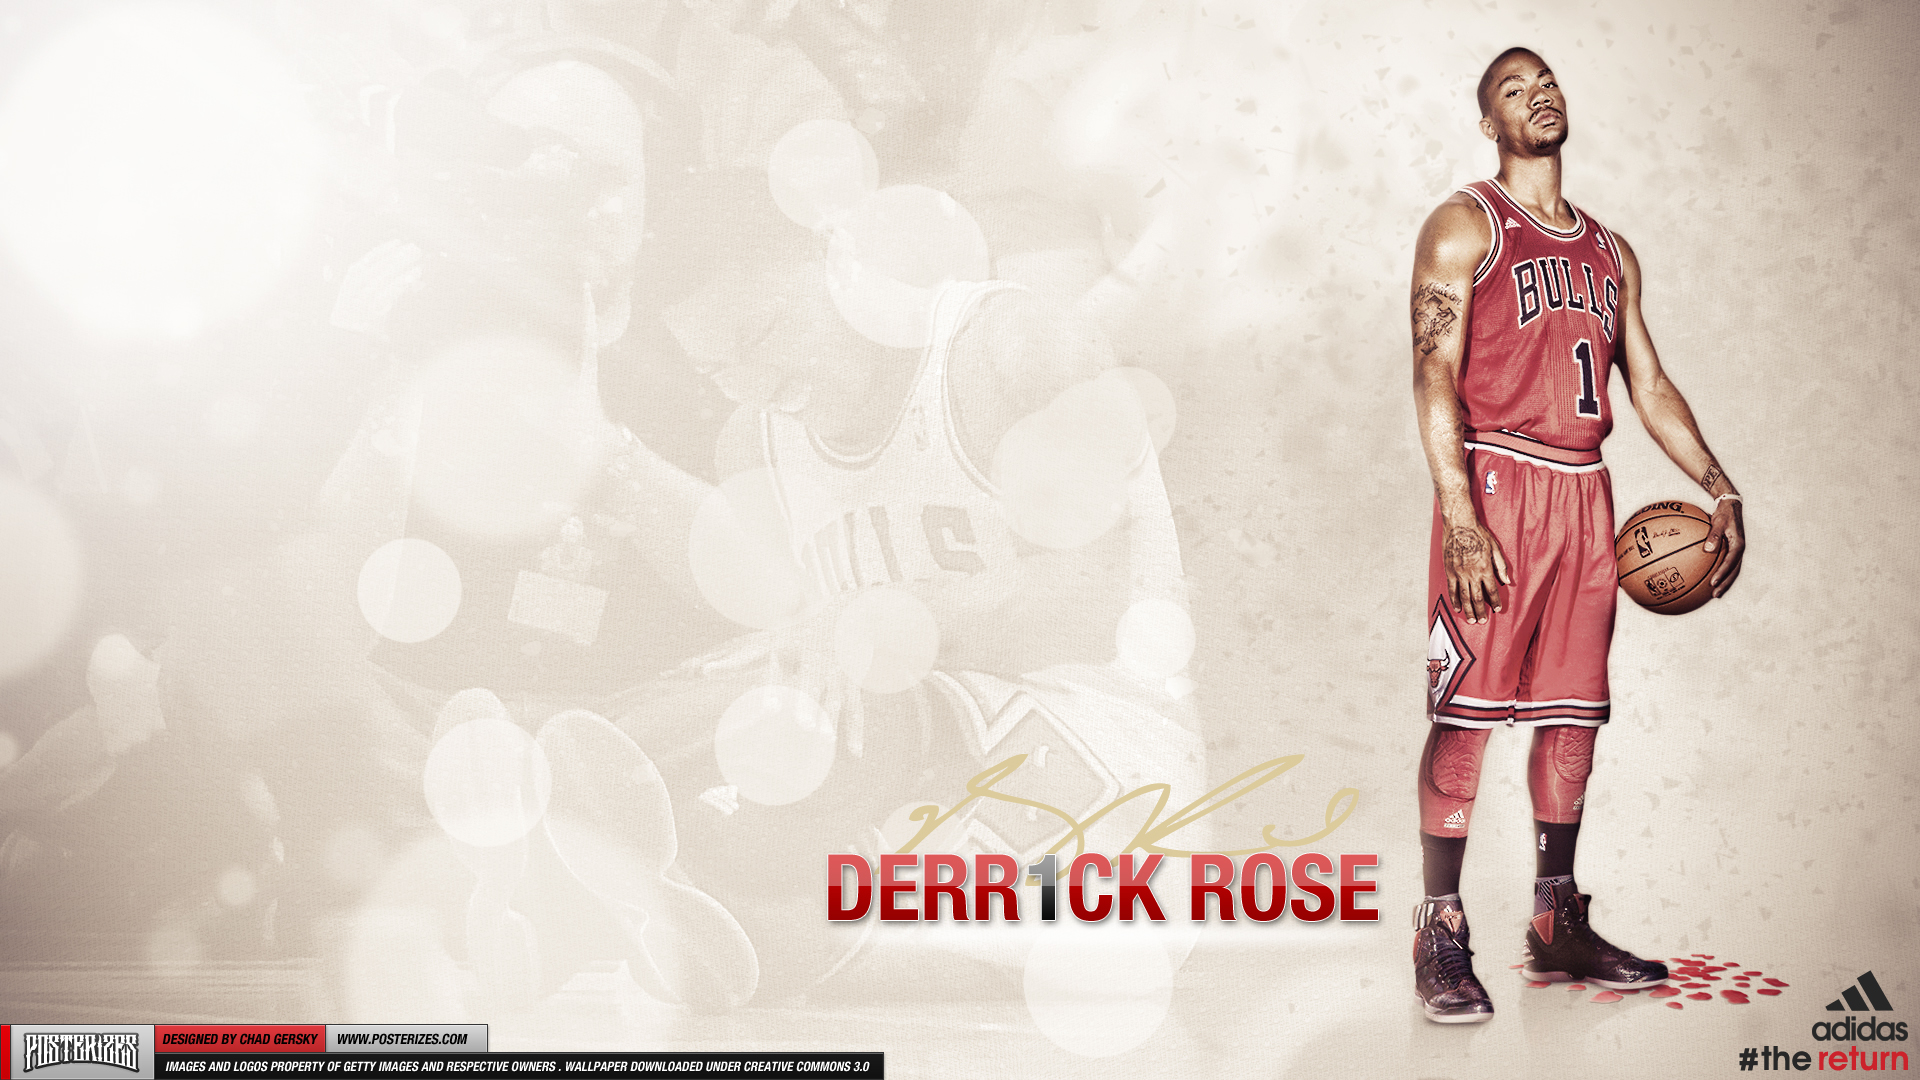 derrick rose wallpaper iphone,schriftart,formelle kleidung,mode design,basketball spieler